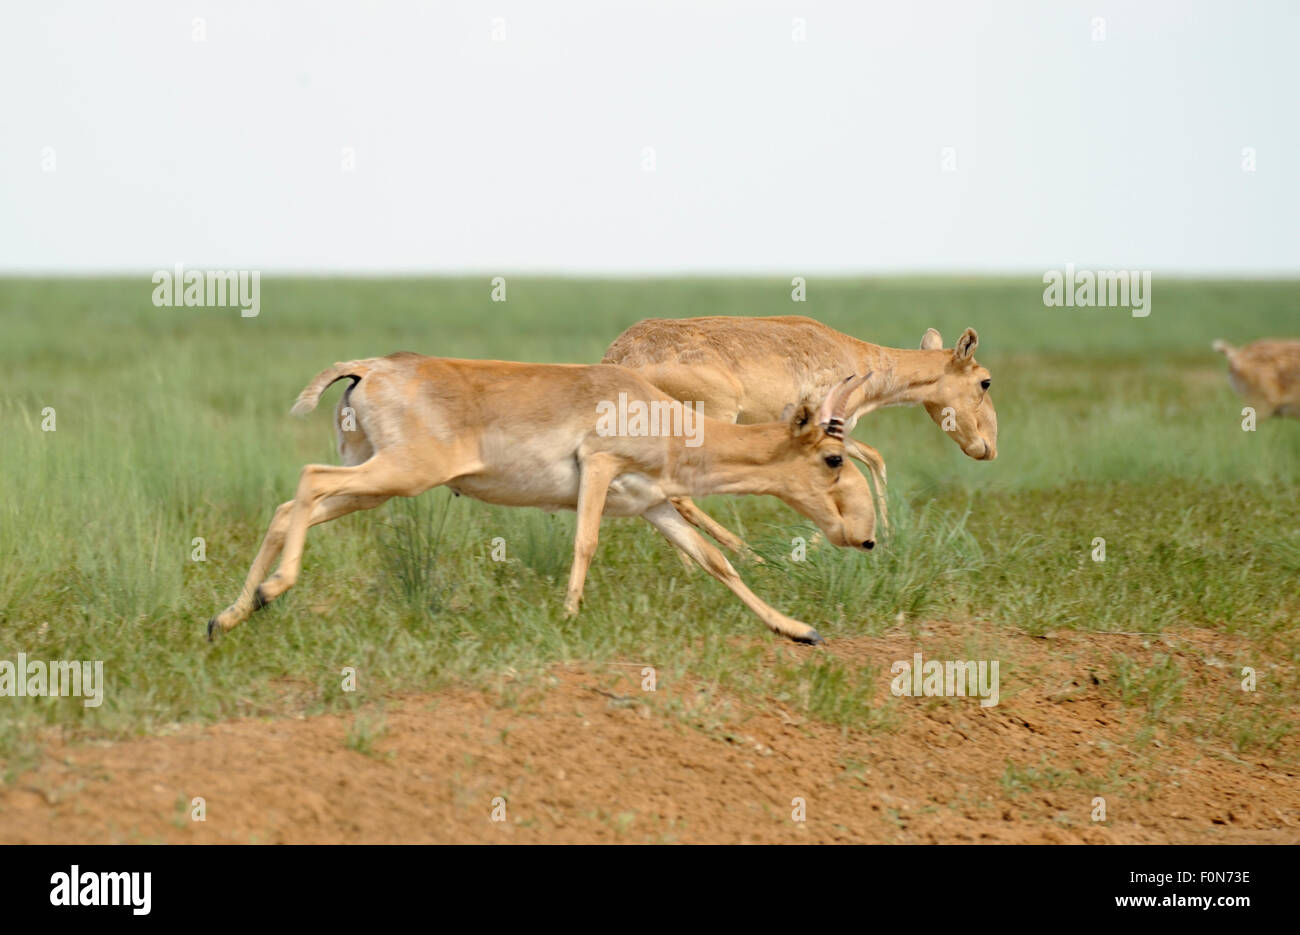 Les antilopes saïga (Saiga tatarica) mâle et femelle, d'exécution, Cherniye zemli (terre noire), Réserve naturelle de Kalmoukie, en Russie, en mai 2009 Banque D'Images